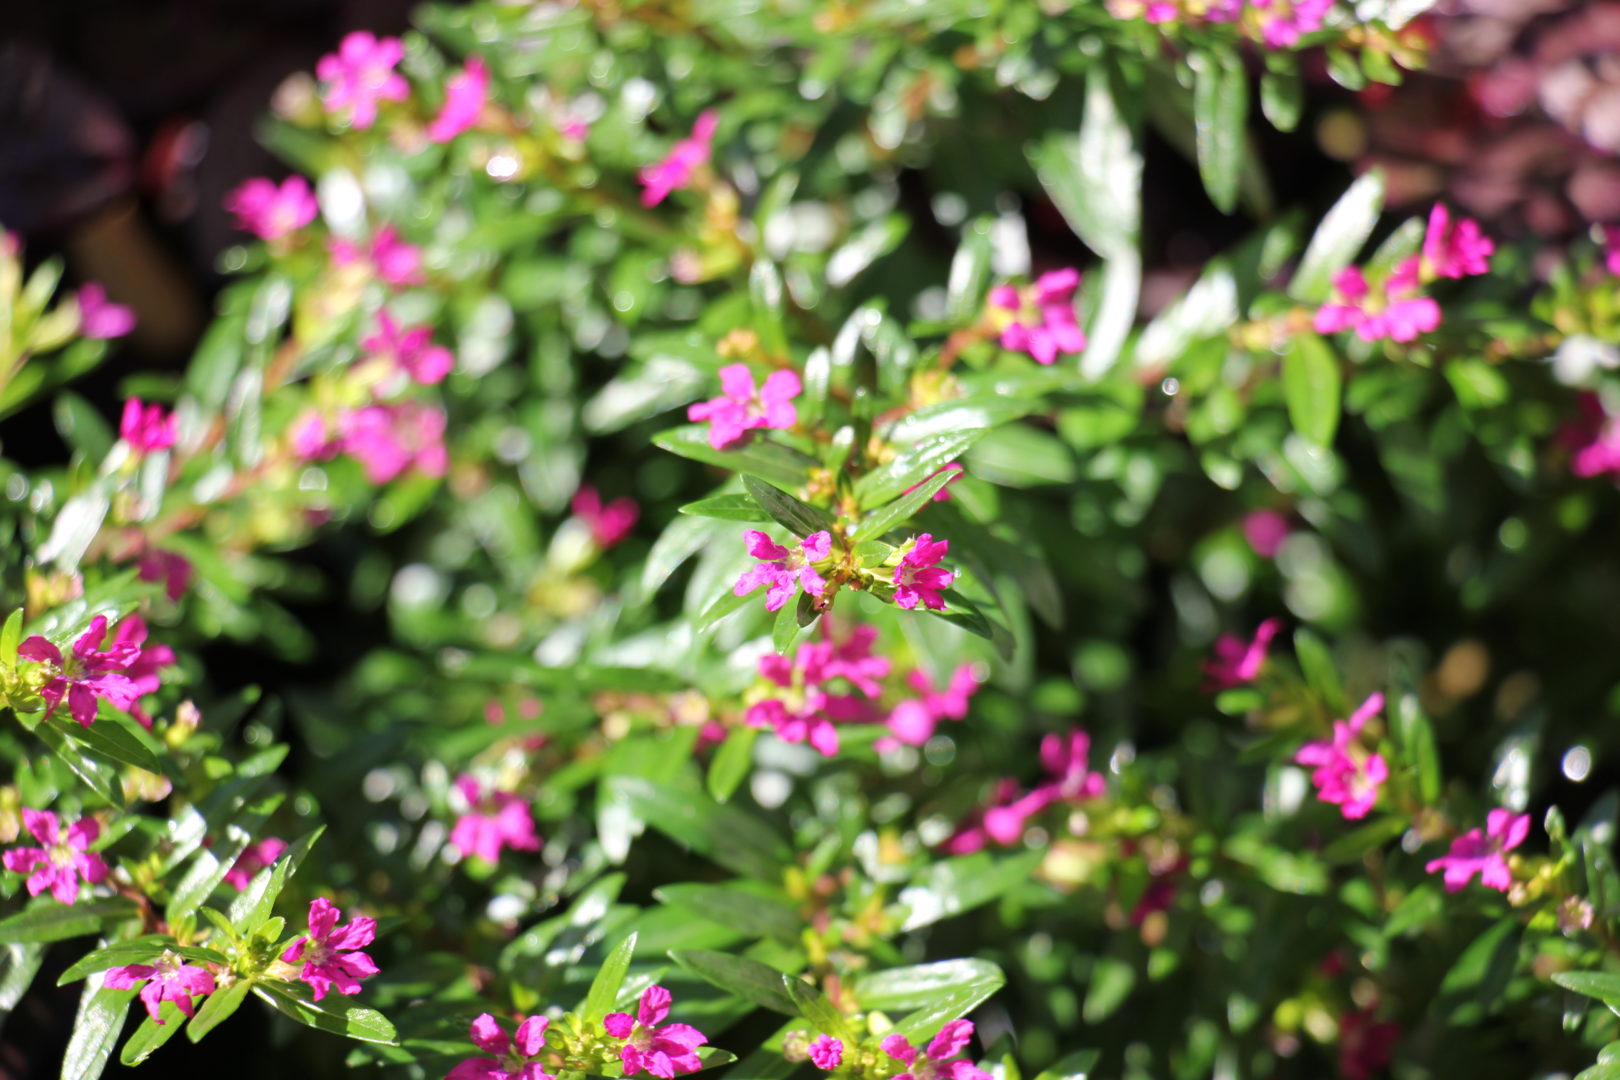 Низенькие растения с мелкими розовыми цветками - куфея, или ложная эрика